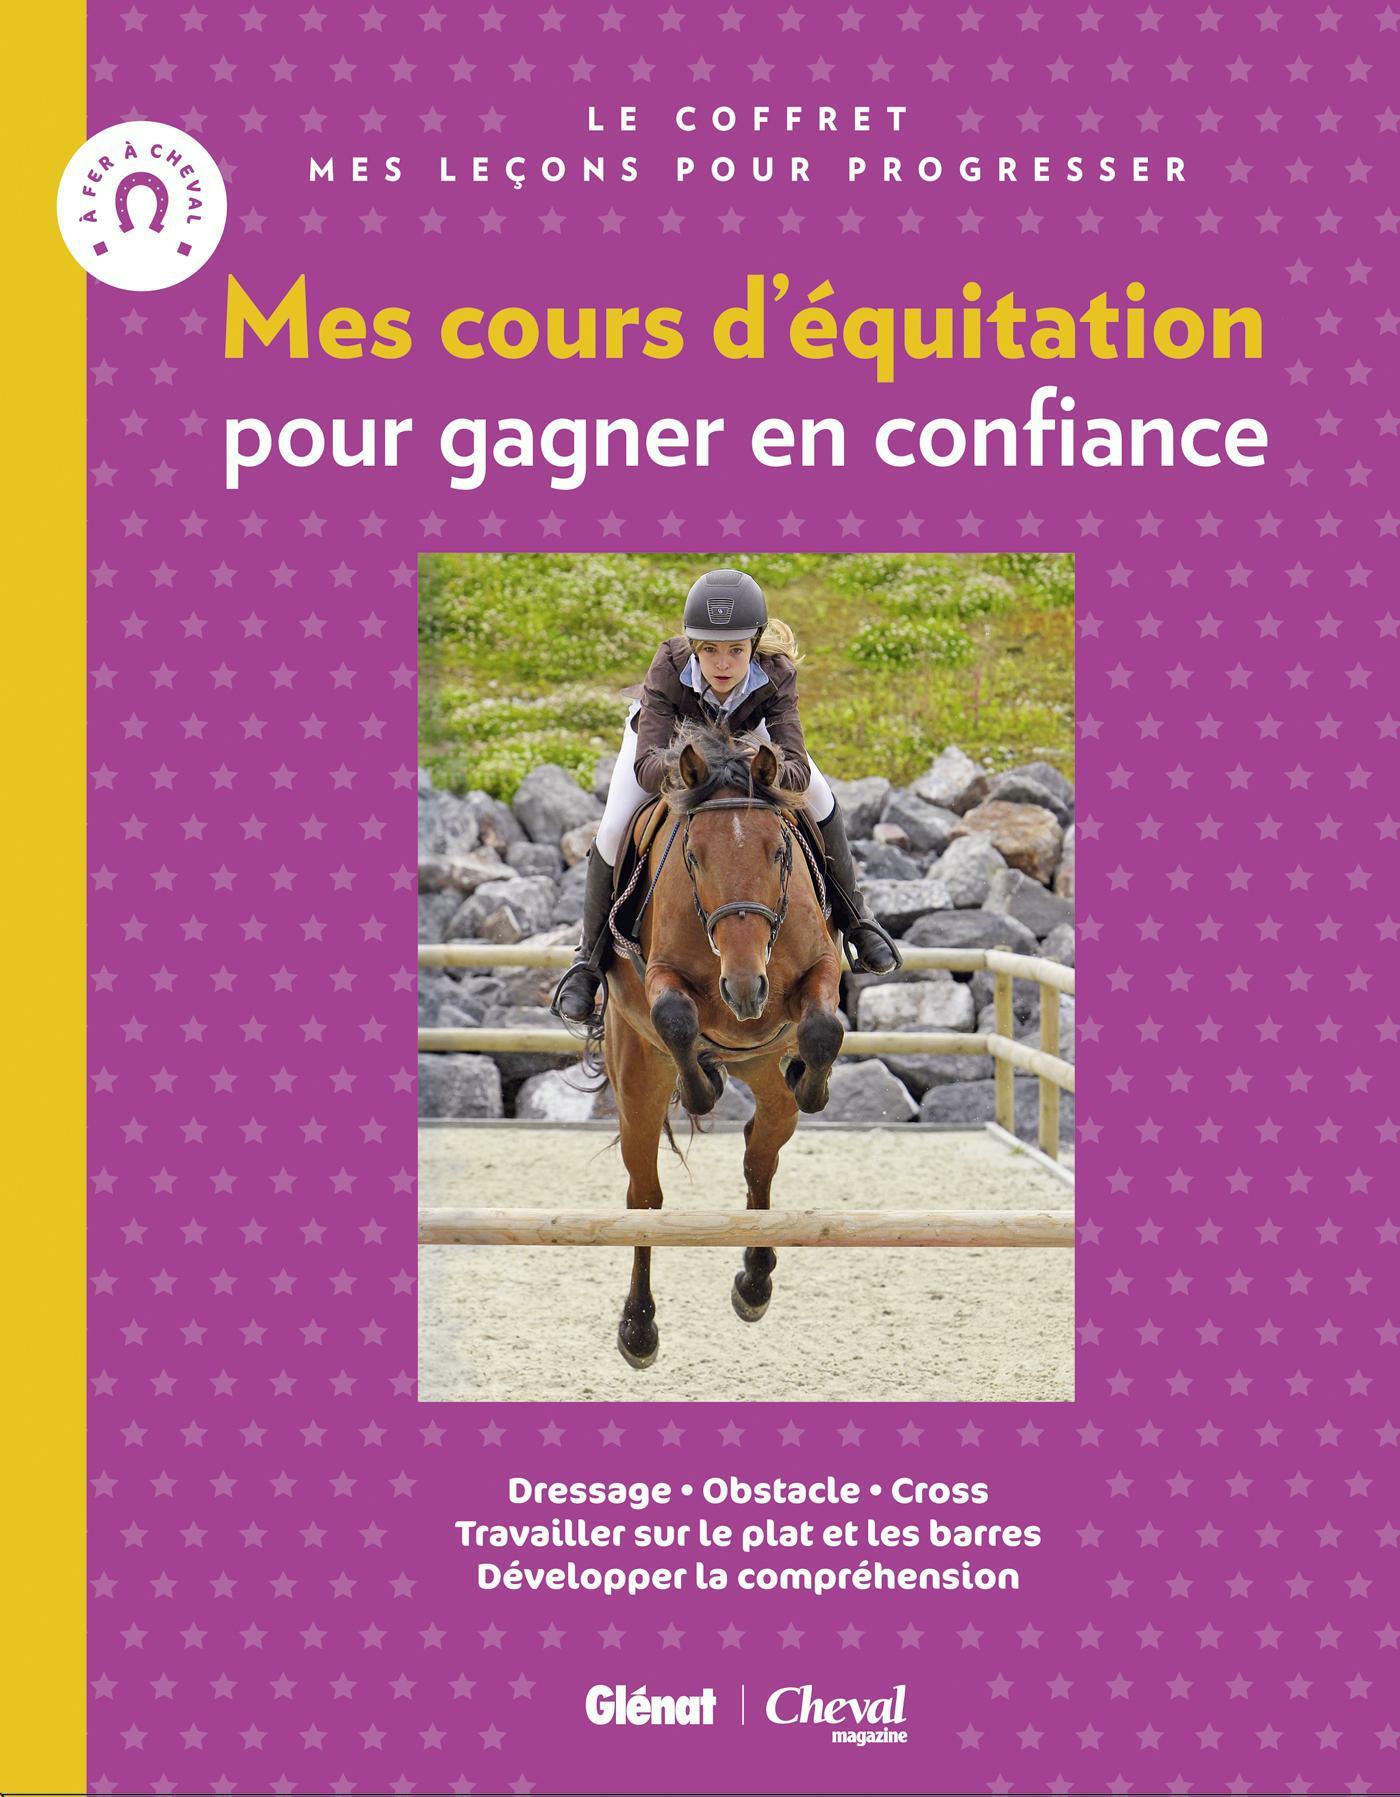 Vente Livre :                                    mes cours d'équitation pour gagner en confiance ; je saute à cheval ; je m'entraîne à cheval ; mes leçons pour progresser
- Emmanuelle Brengard                                     